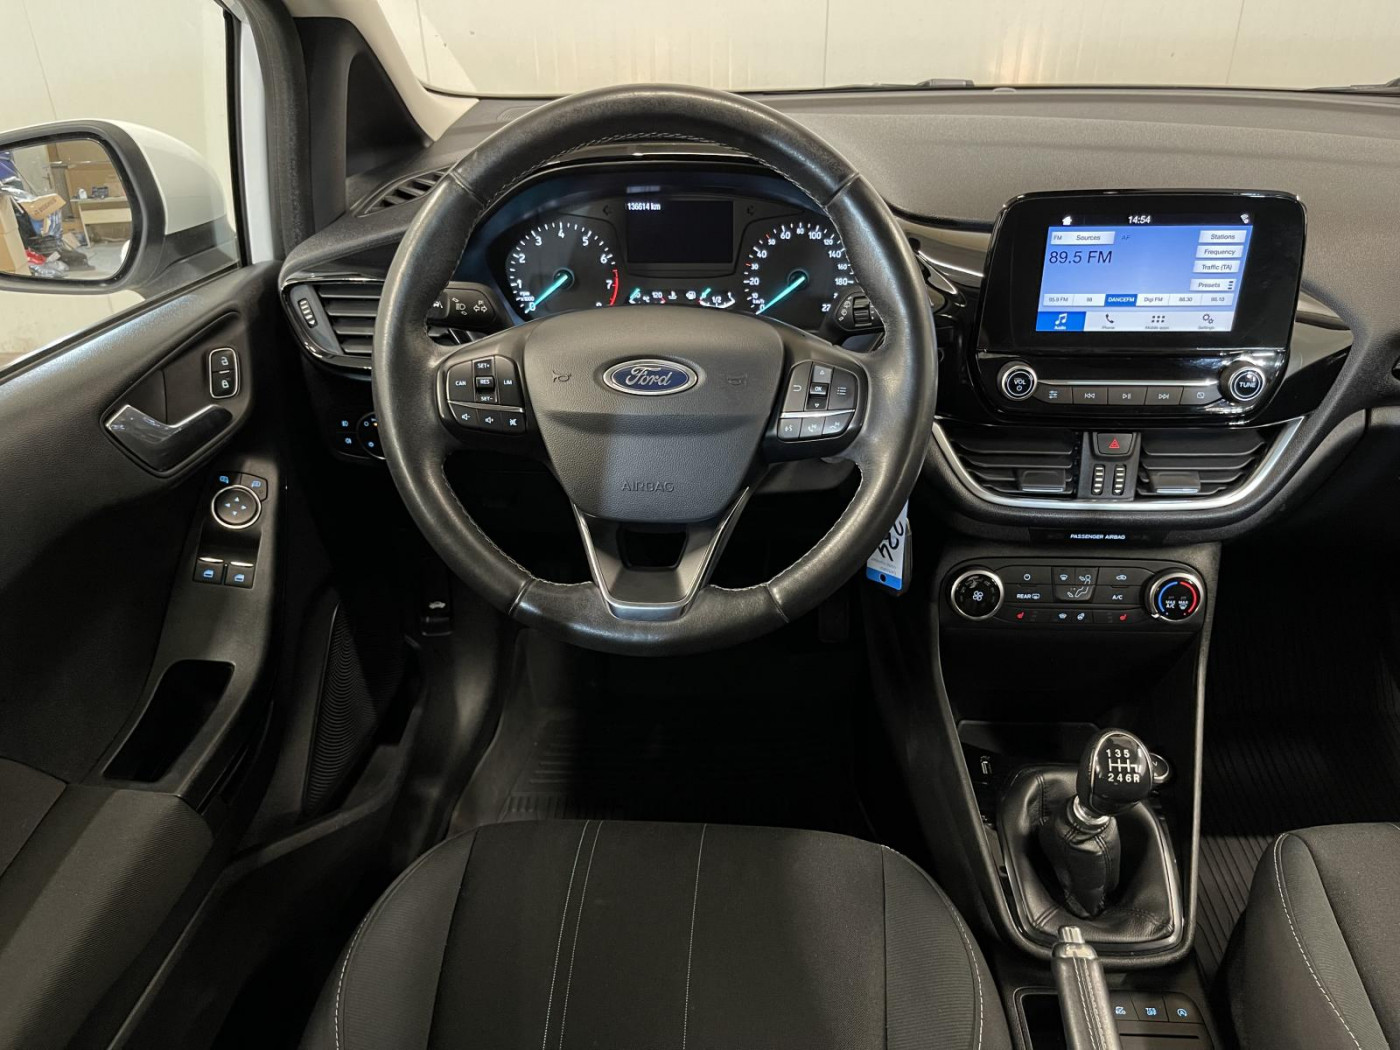 Ford Fiesta  101 CP   - 10190 €,   134900 km,  anul 2018,  culoare alb 